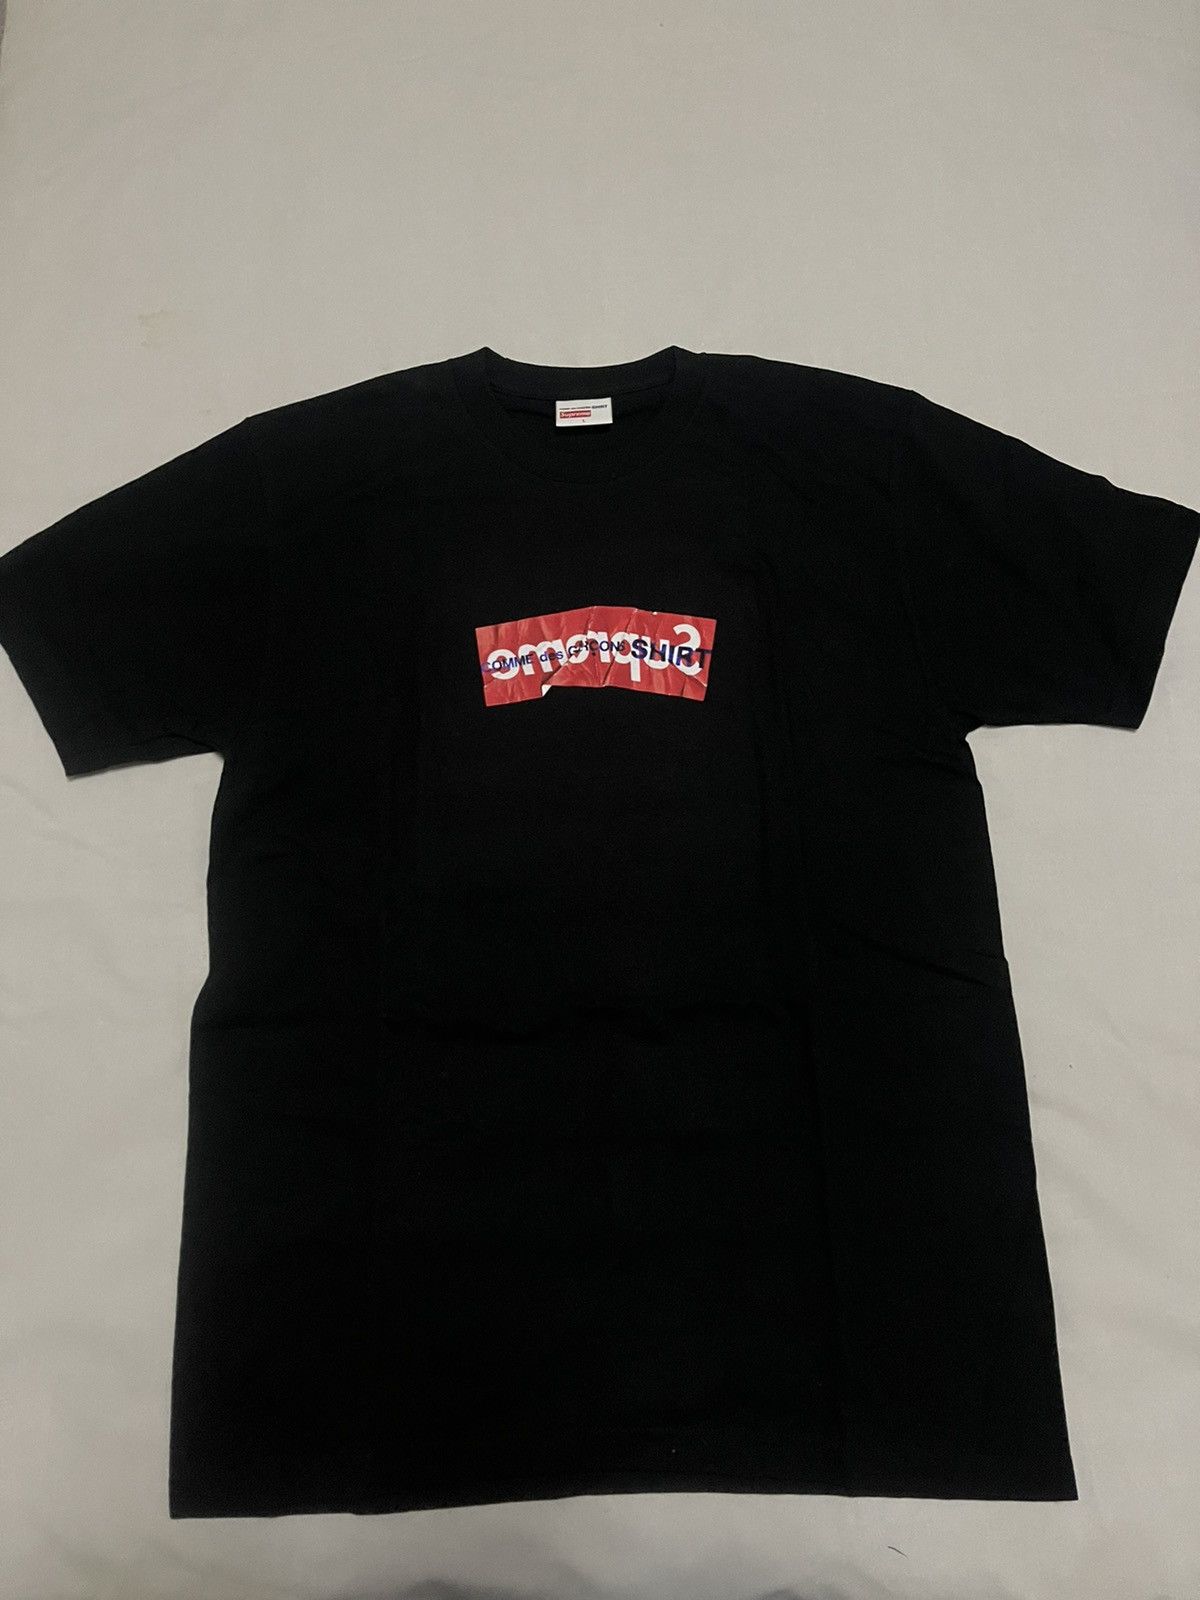 Supreme Supreme cdg shirt box logo tee black | Grailed